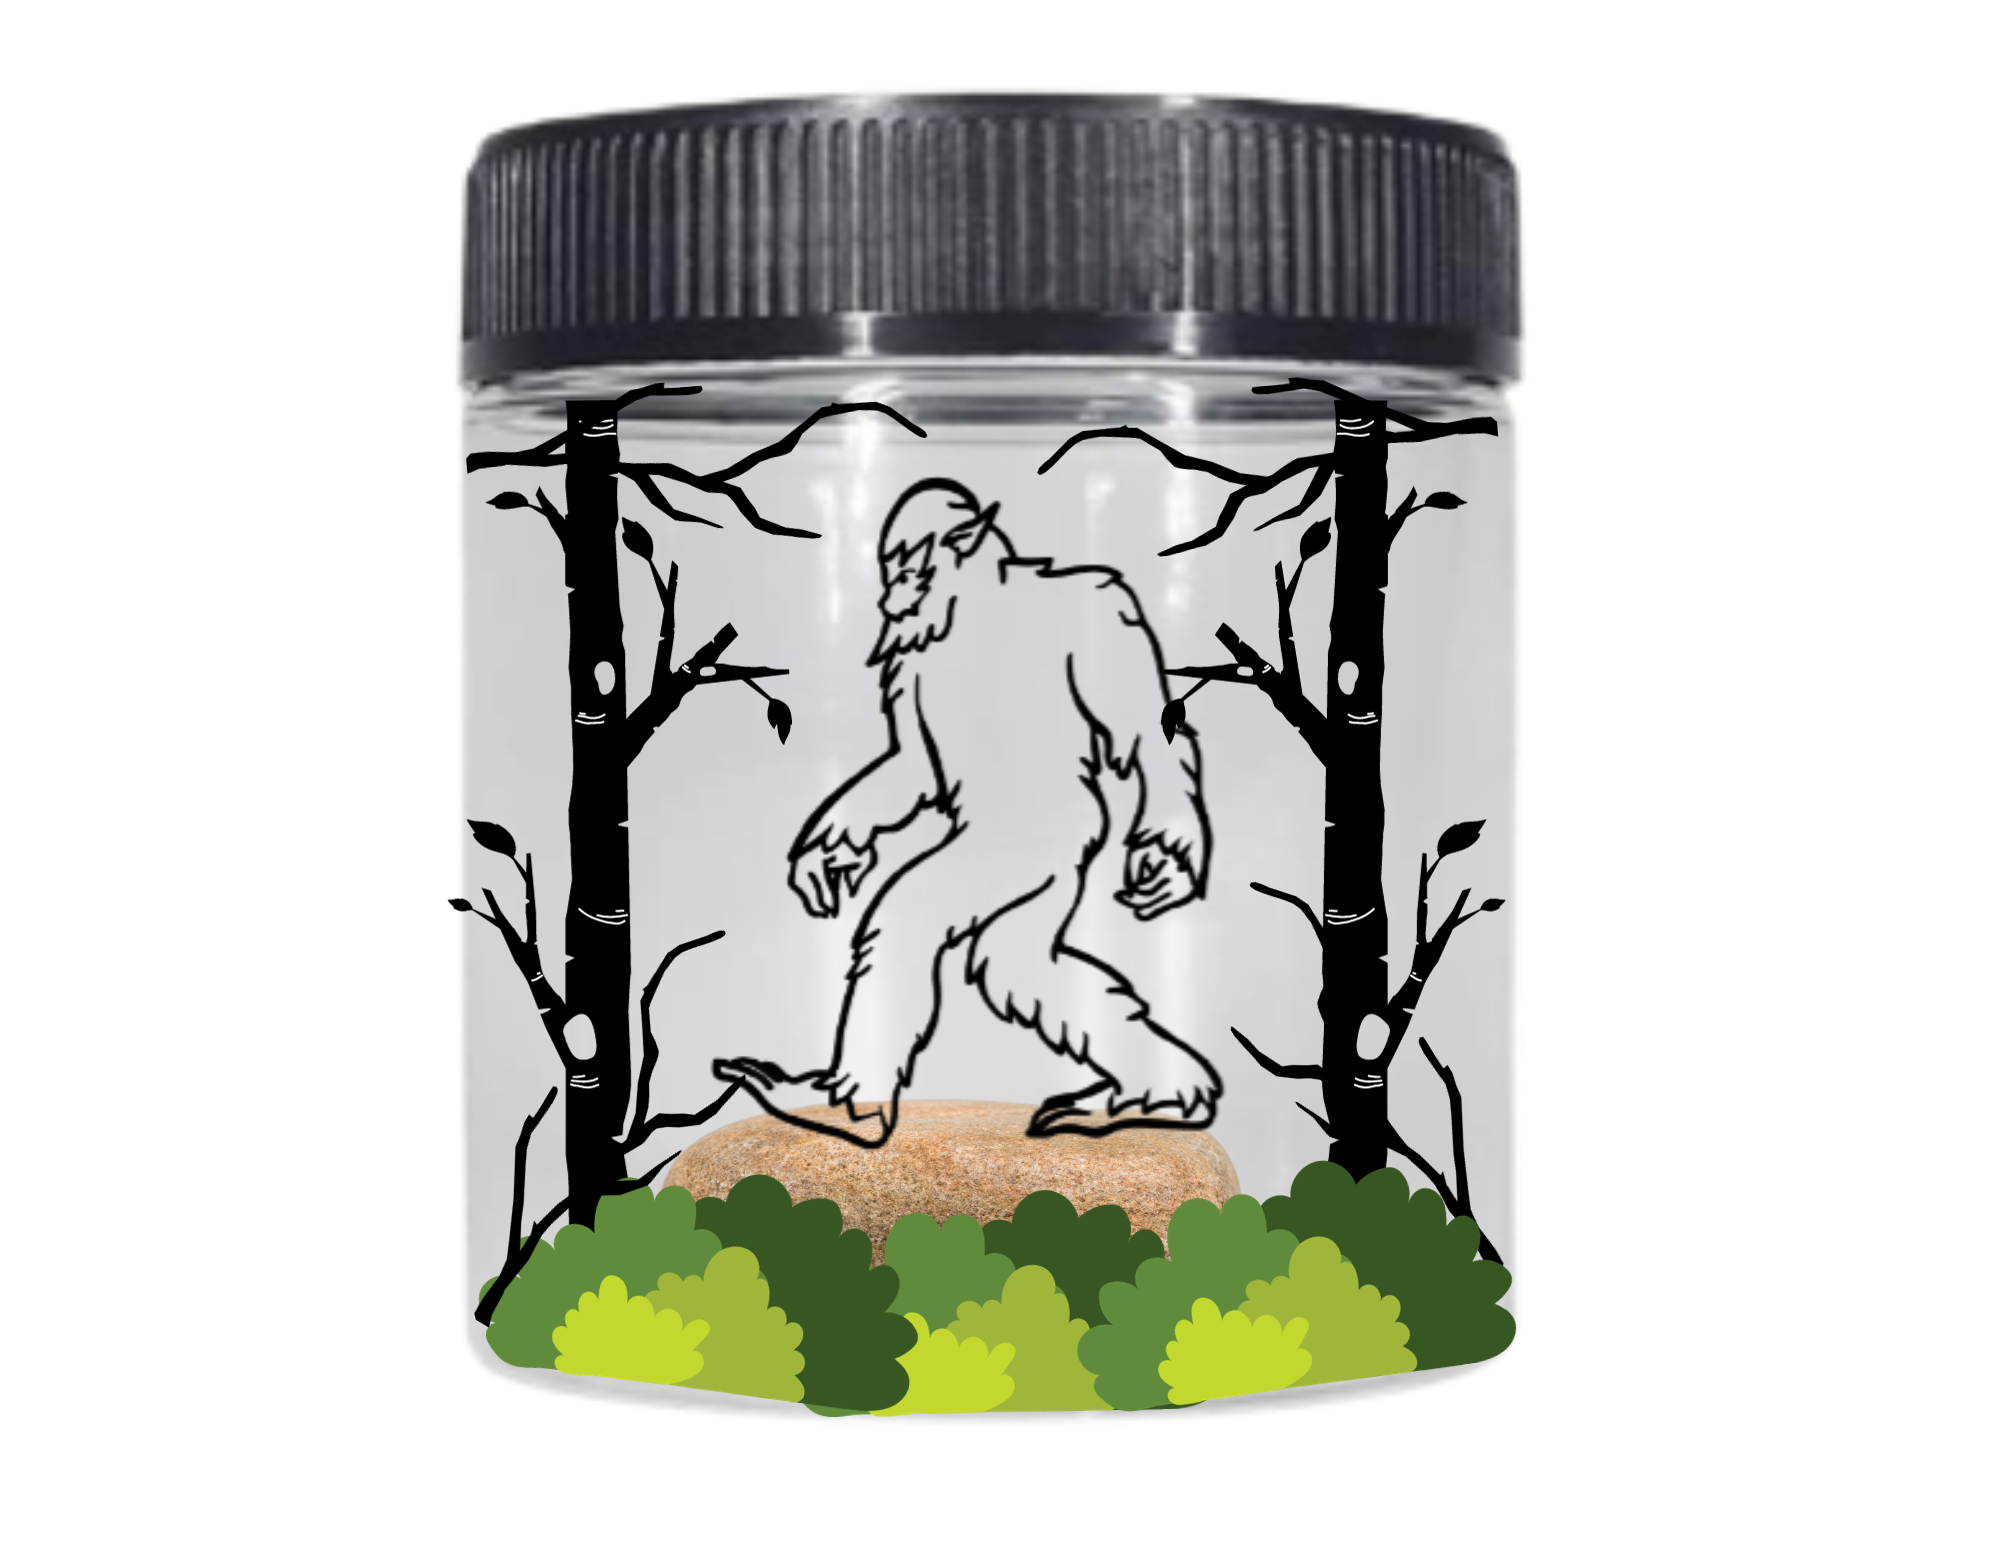 Image of bigfoot in jar